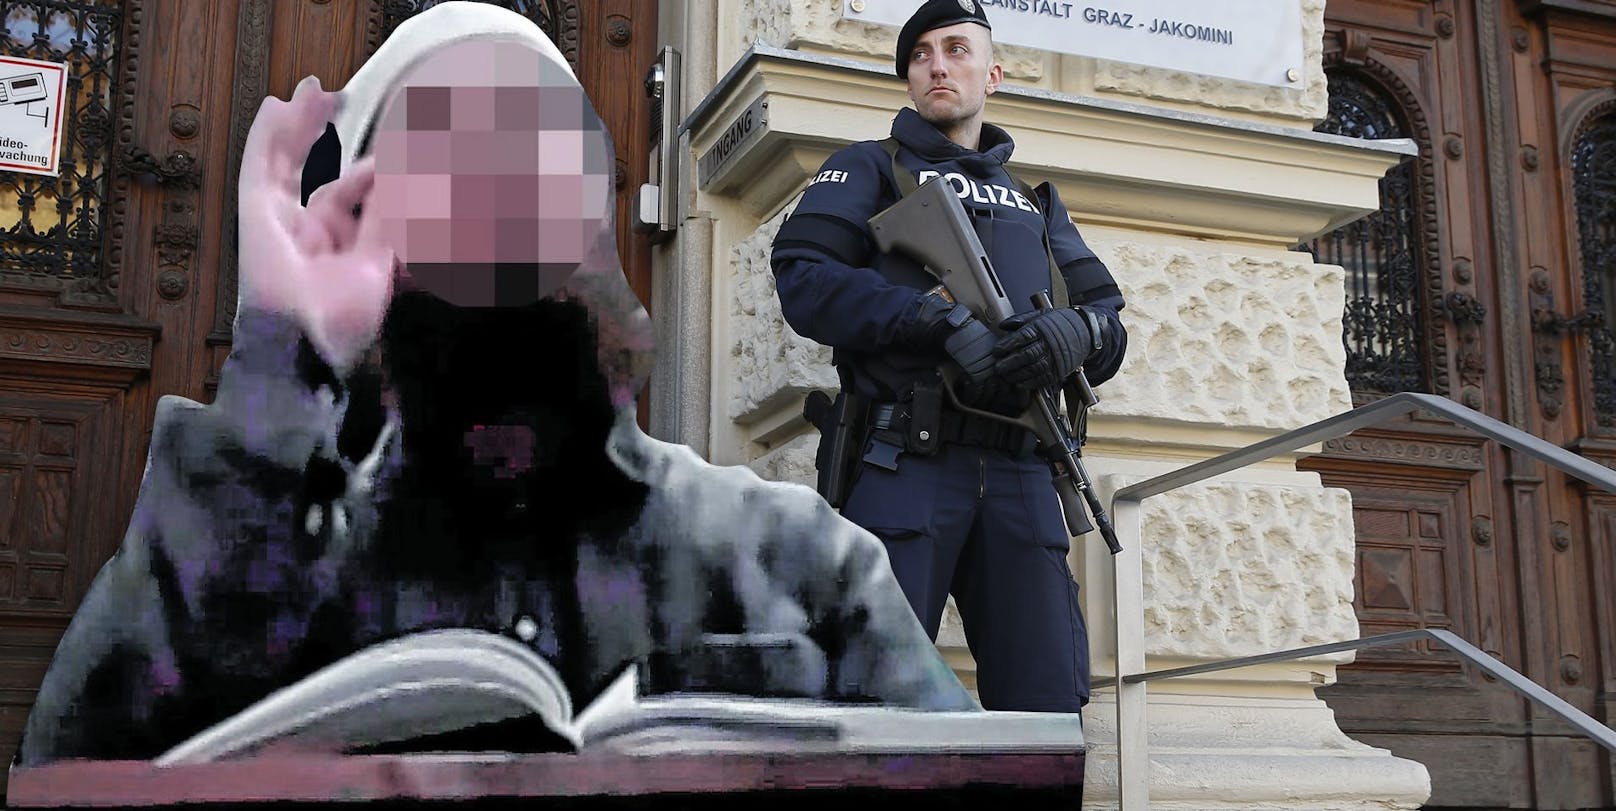 Neben "Abu Aische" ist auch Hassprediger O. (im Bild) angeklagt, sein Prozess war 2016 in Graz.